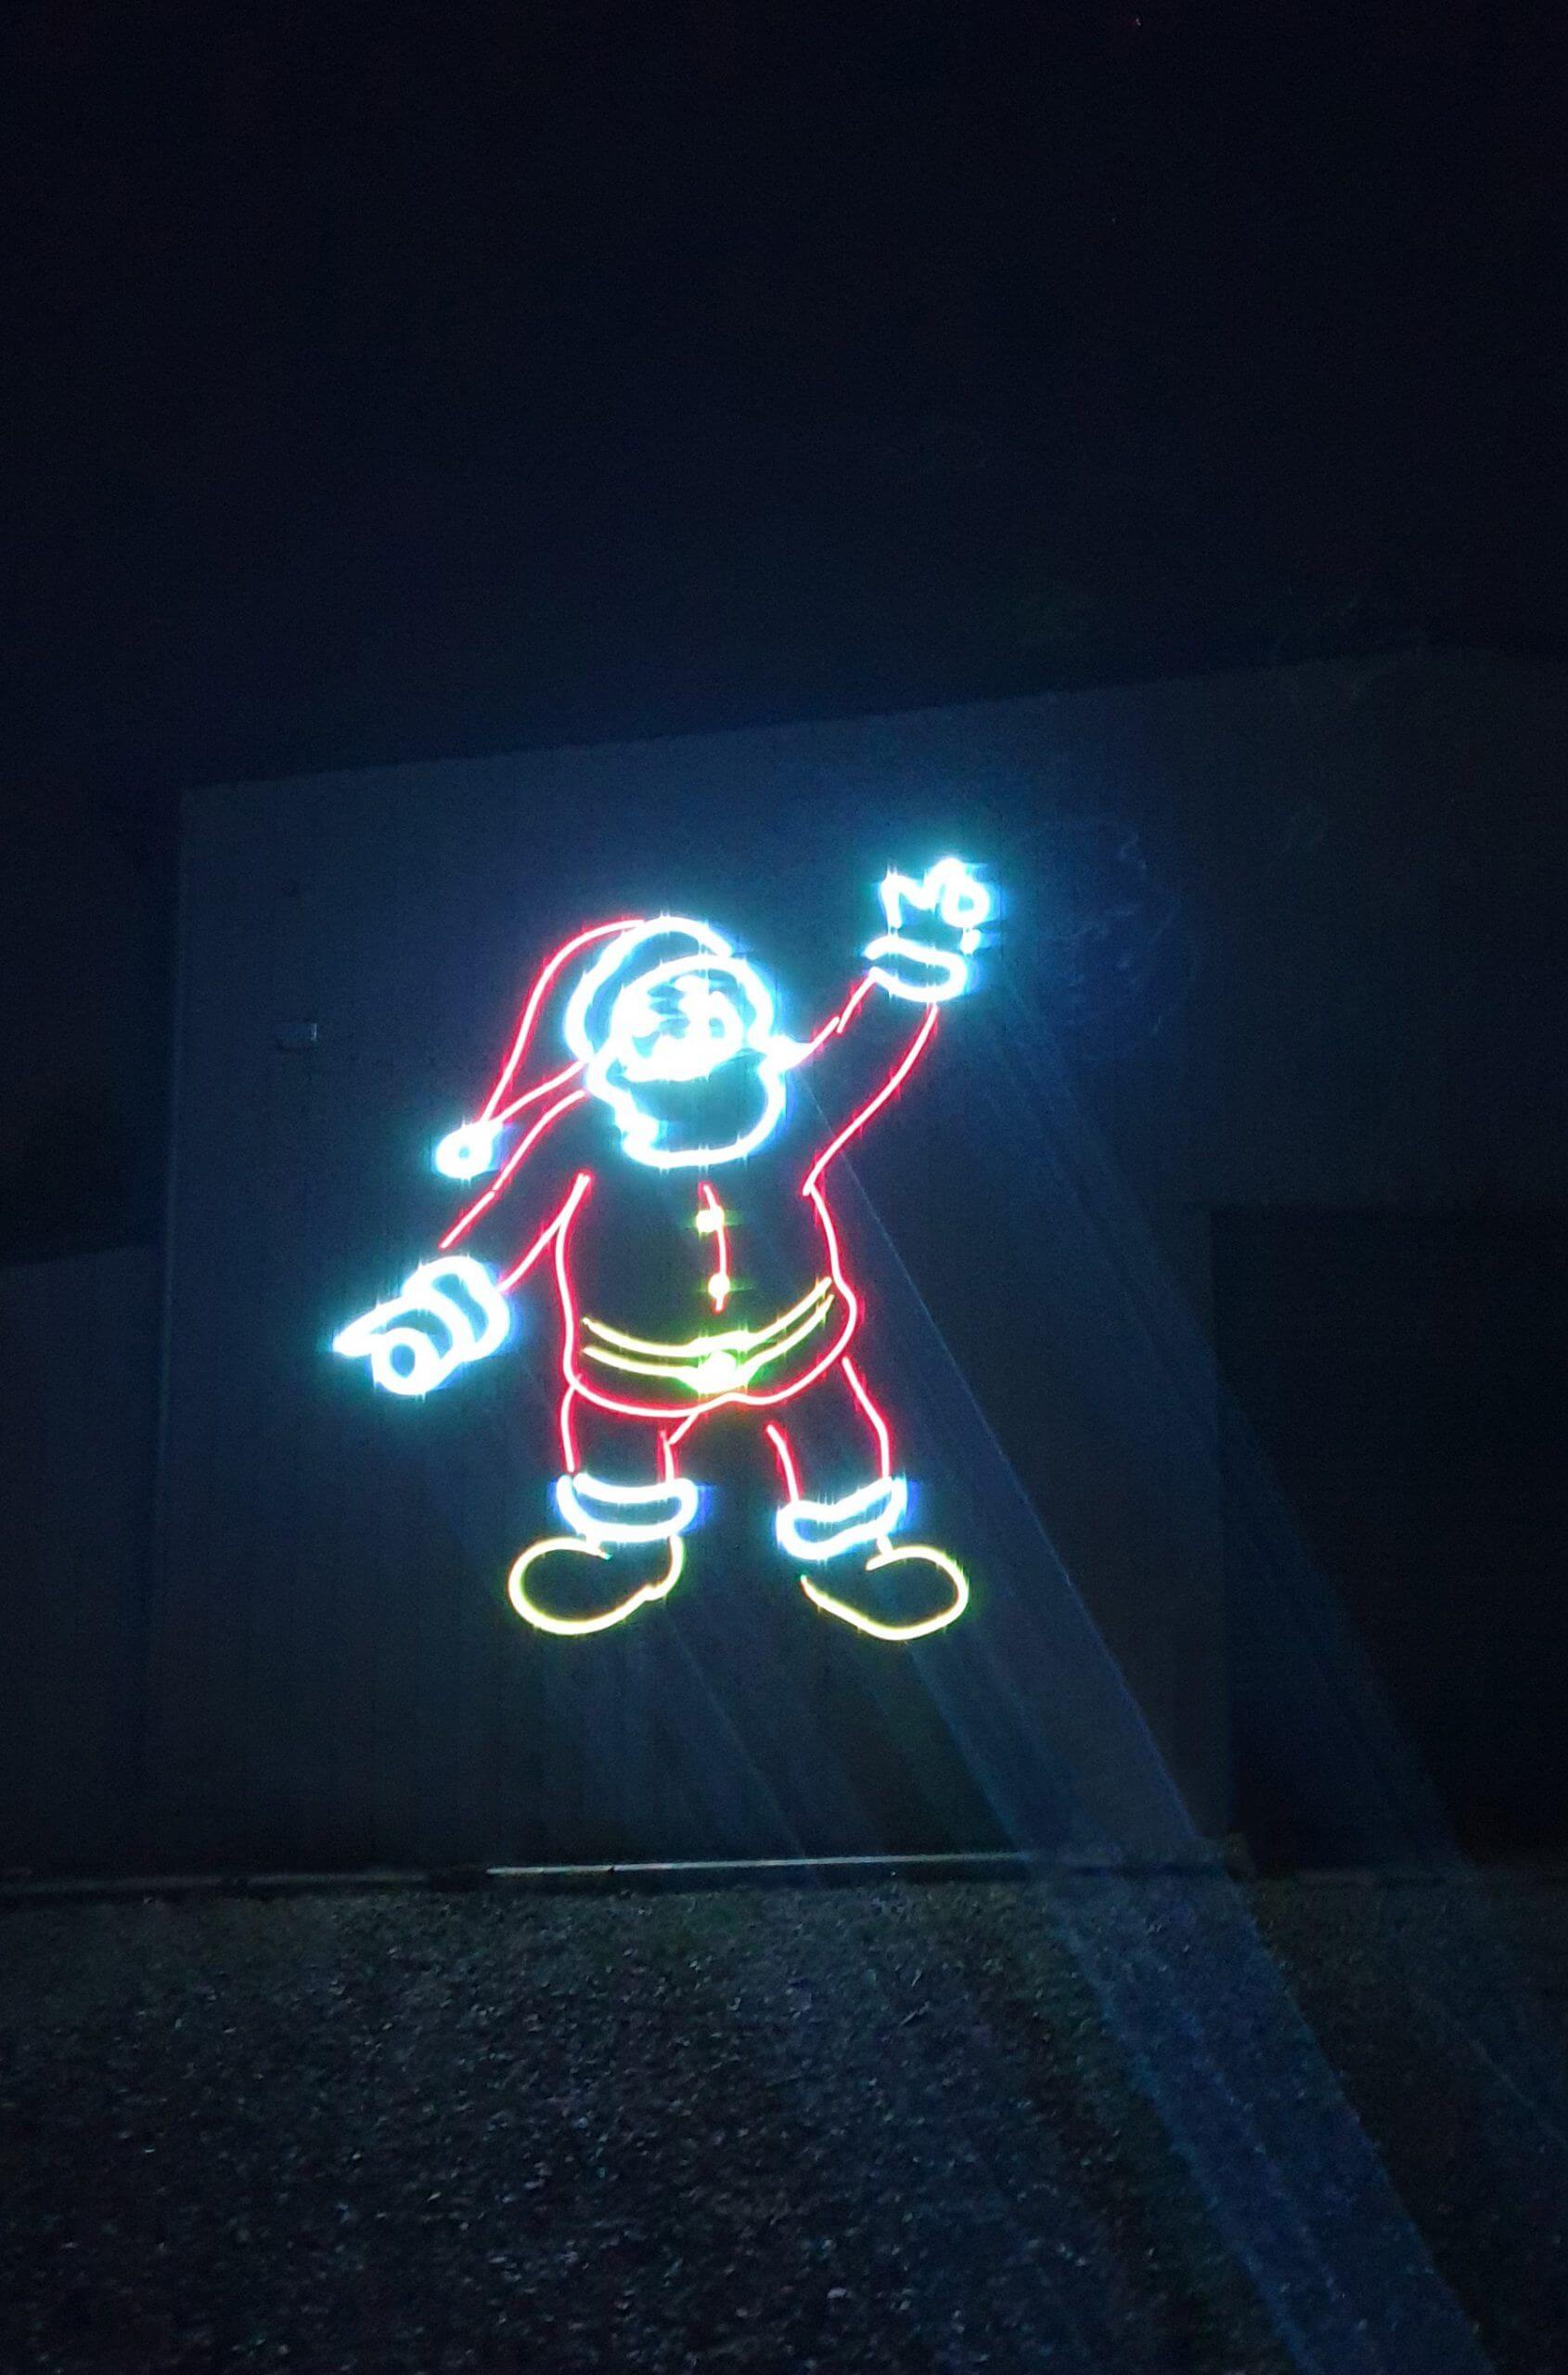 Europe Évènement - Laser projection of a Santa Claus